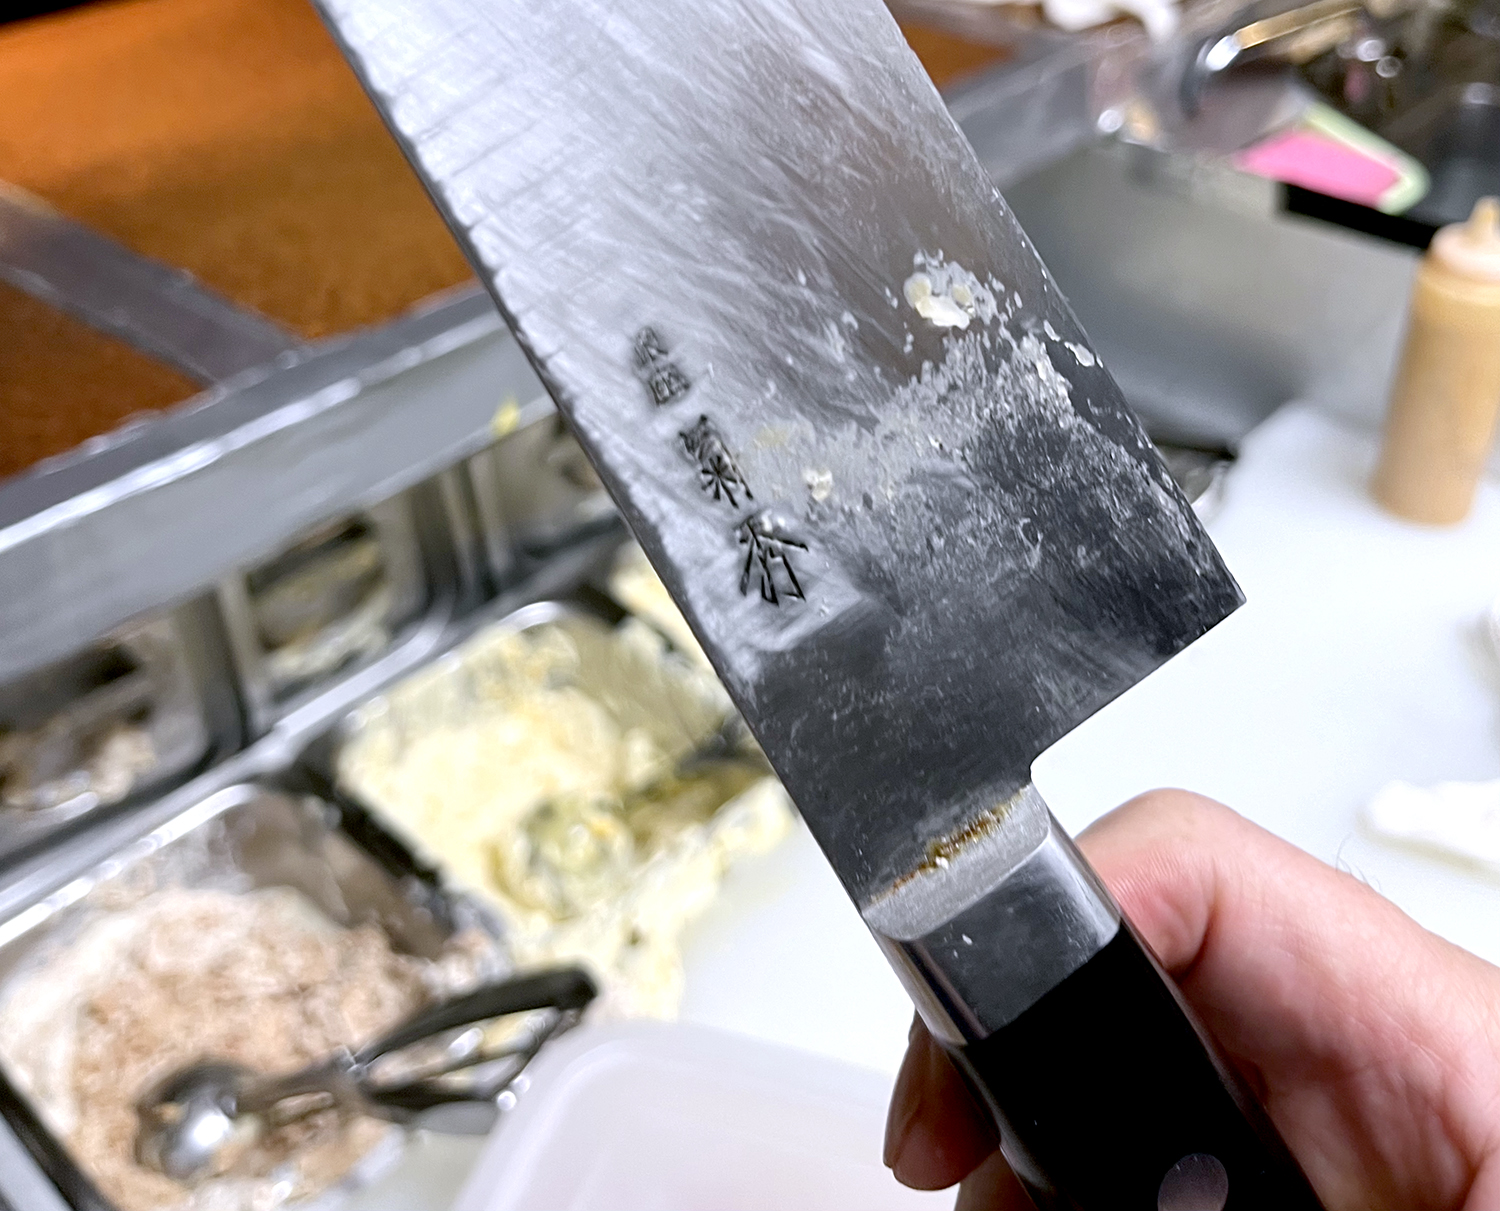 食パンは老舗高級カトラリー店『銀座 菊秀』の牛刀で切る。刃が薄くて切れ味バツグンの愛用品。